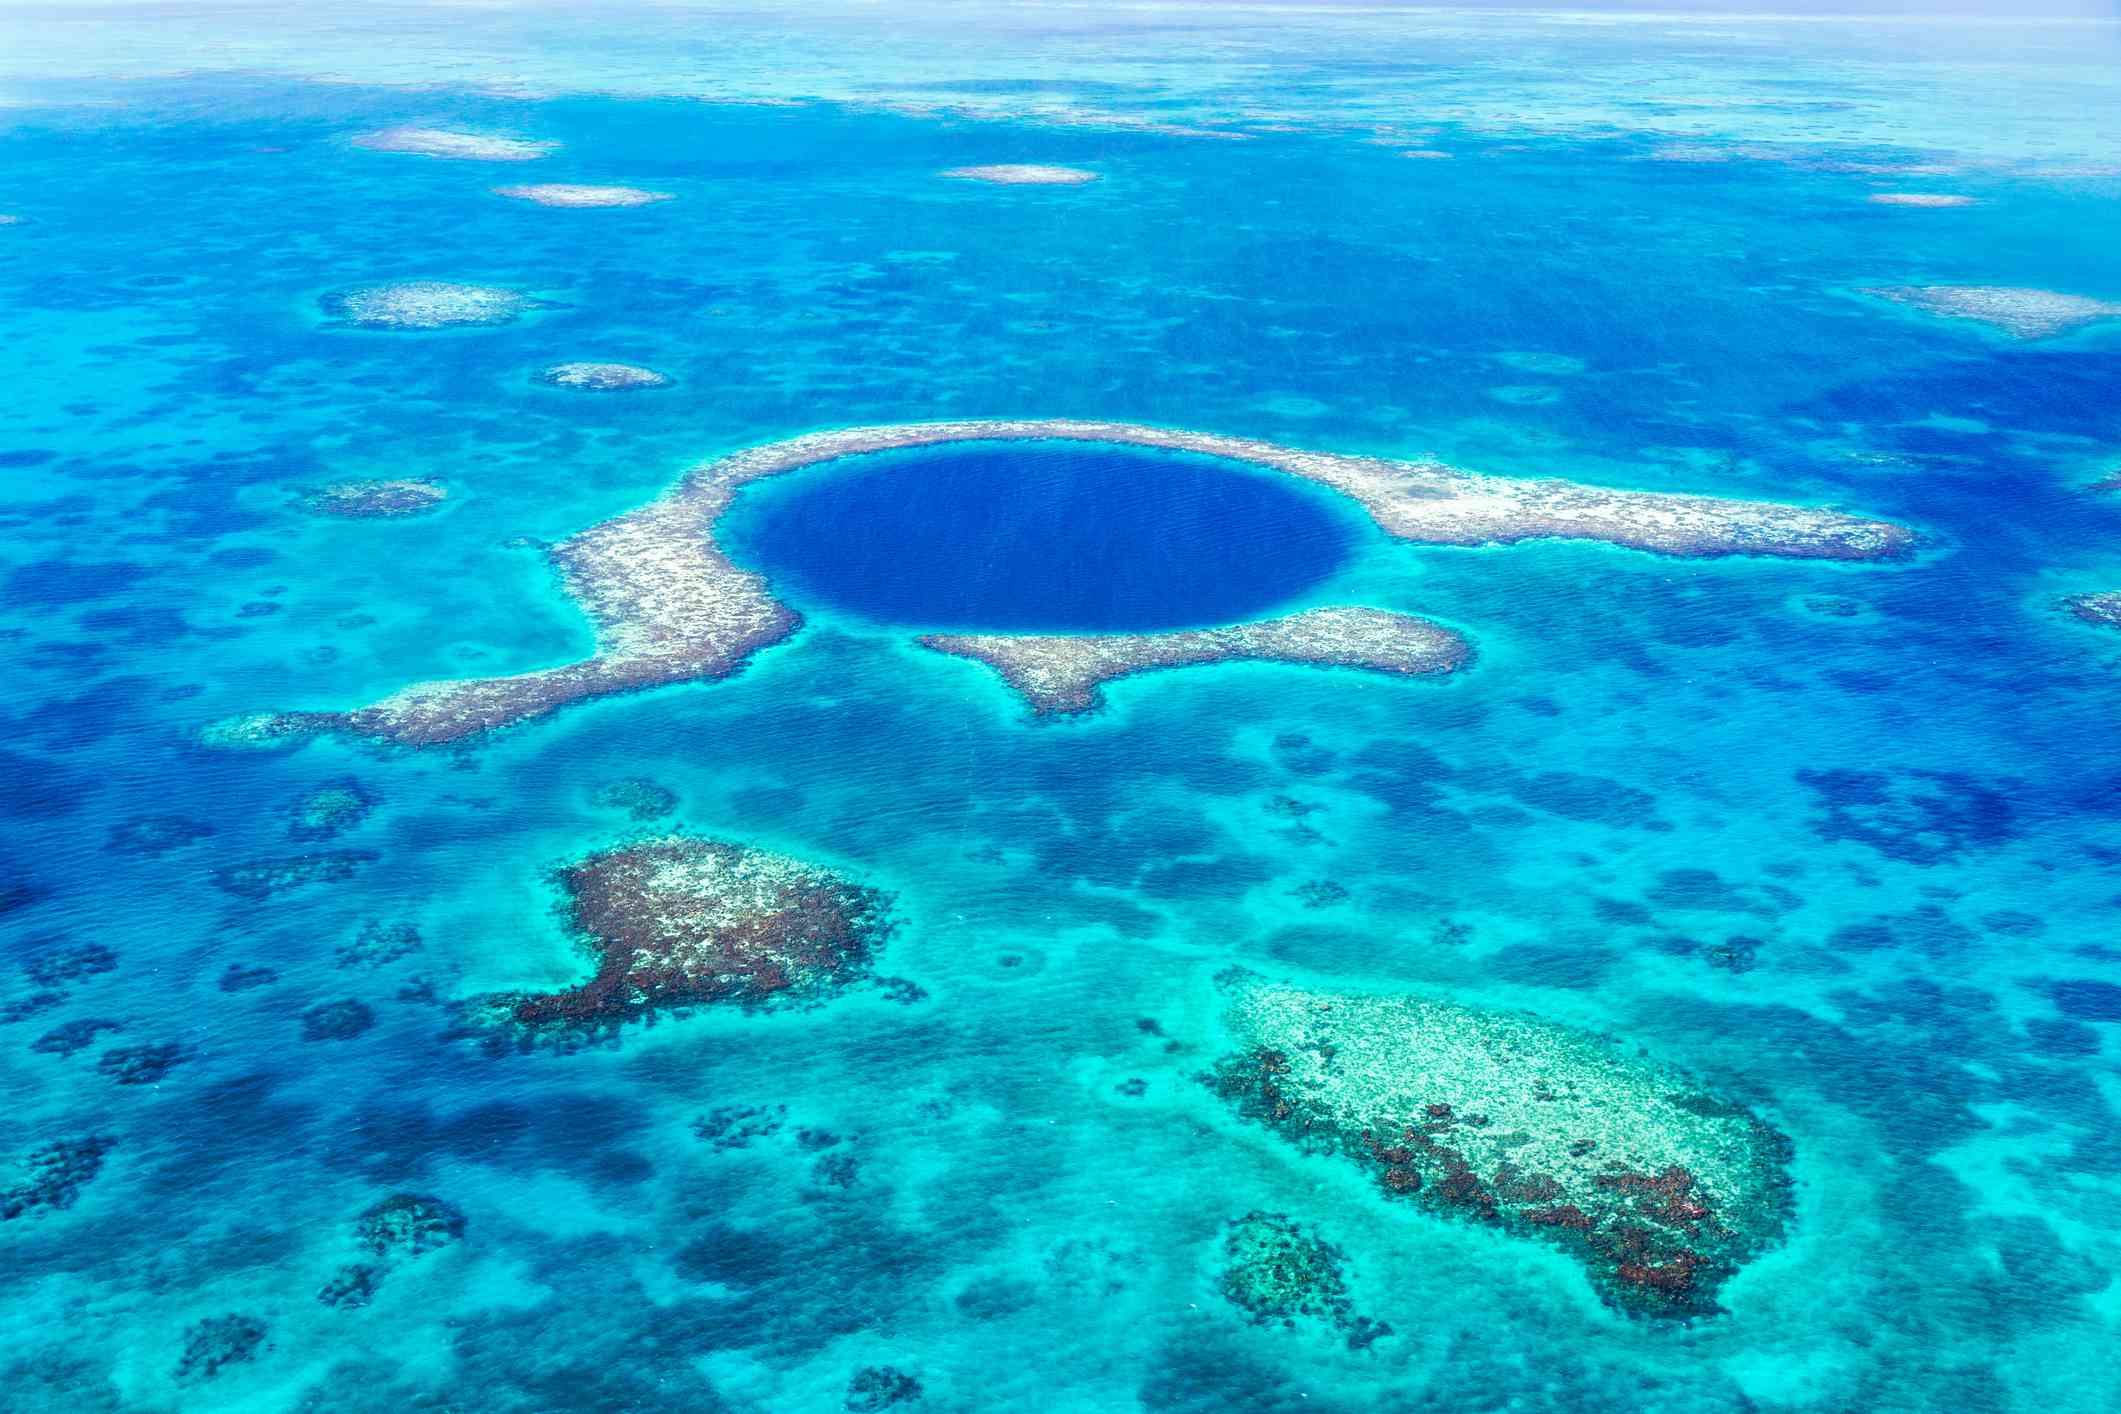 Un círculo de agua azul más oscuro en el océano revela una cueva submarina, rodeada de arrecifes blancos